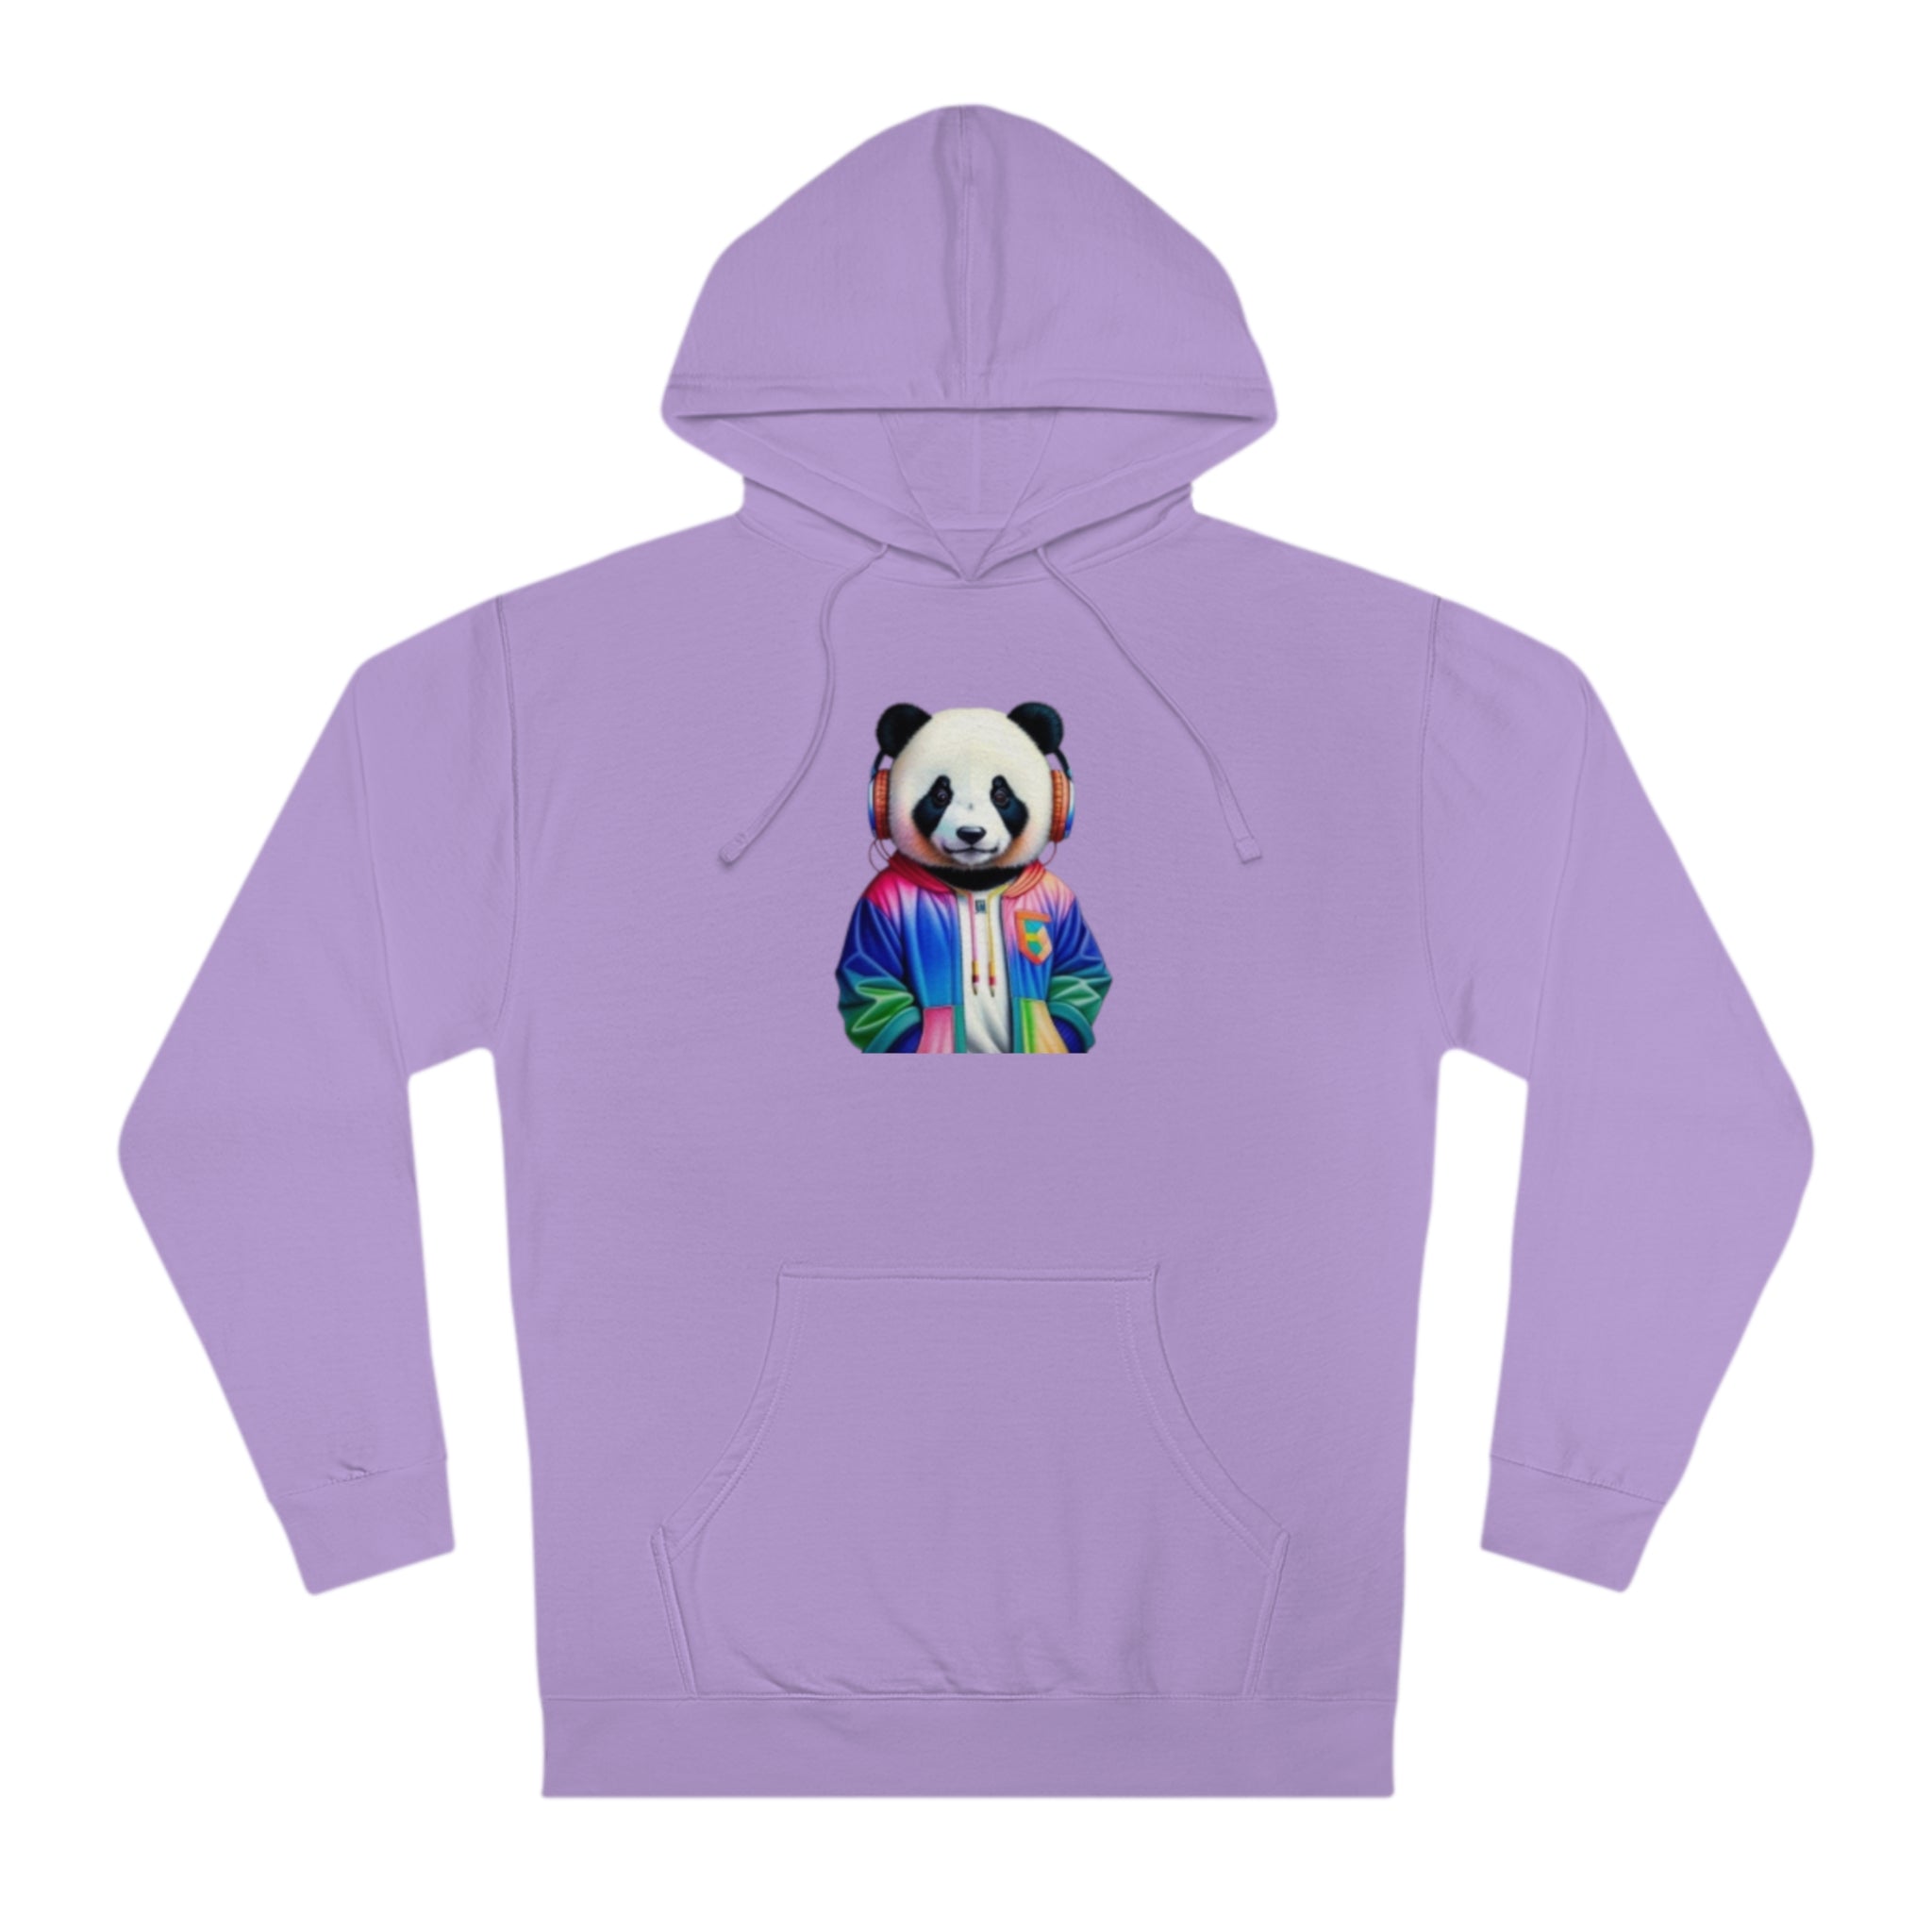 Panda Unisex Hooded Sweatshirt